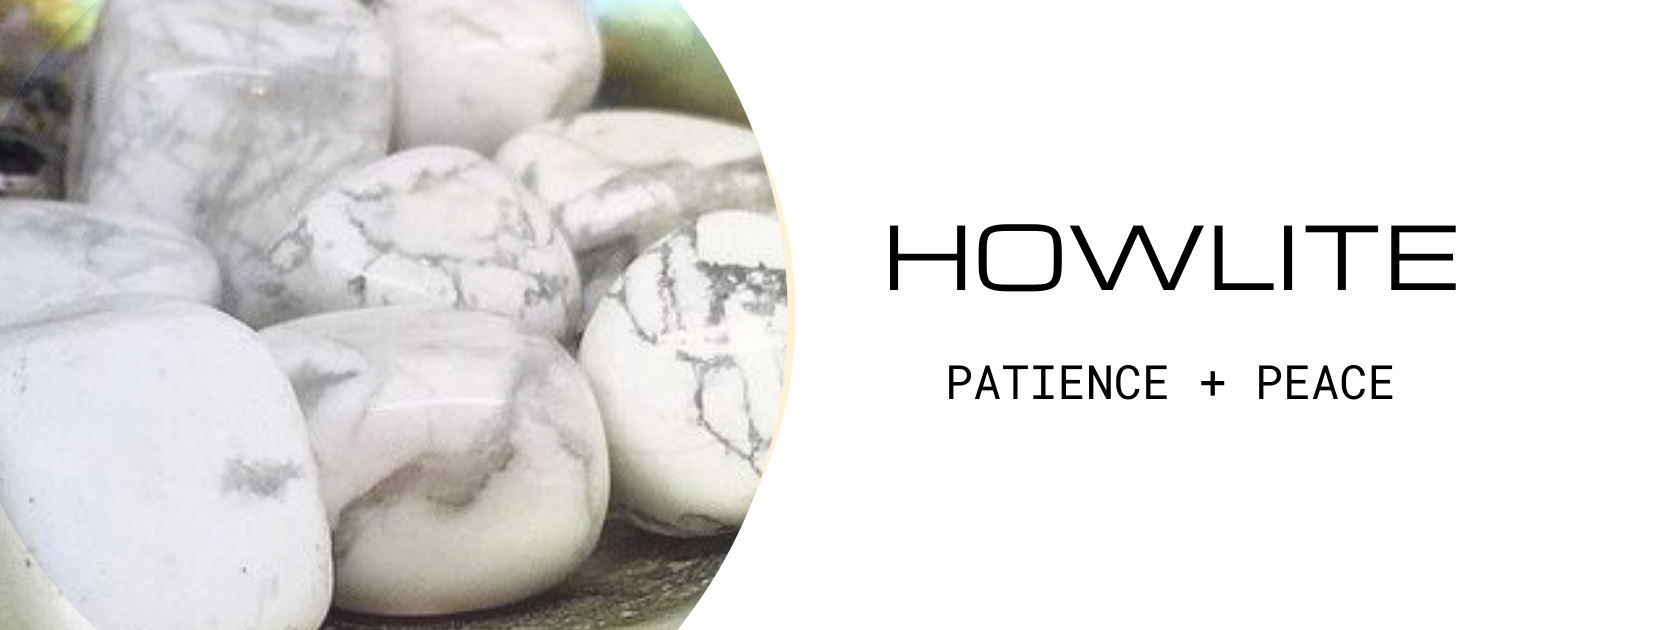 Propiedades curativas de la howlita | Howlita Significado | Beneficios de la Howlita - Cristales Mágicos